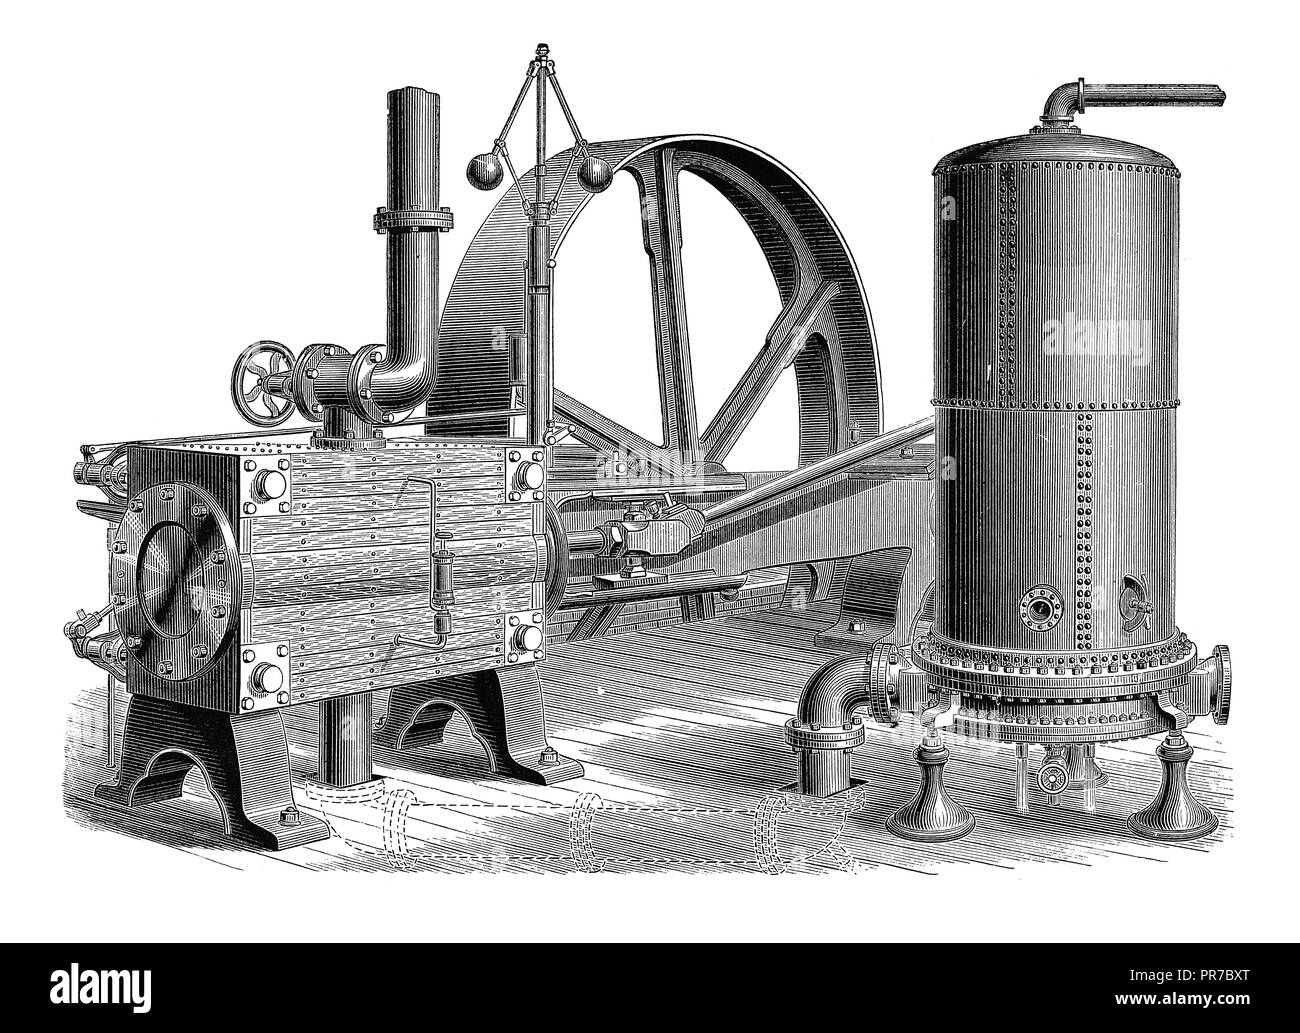 19ème siècle illustration de l'eau d'alimentation Berryman pour chauffe-moteur horizontal. Inventé par l'Américain Robert Berryman à la fin du xixe siècle. P Banque D'Images